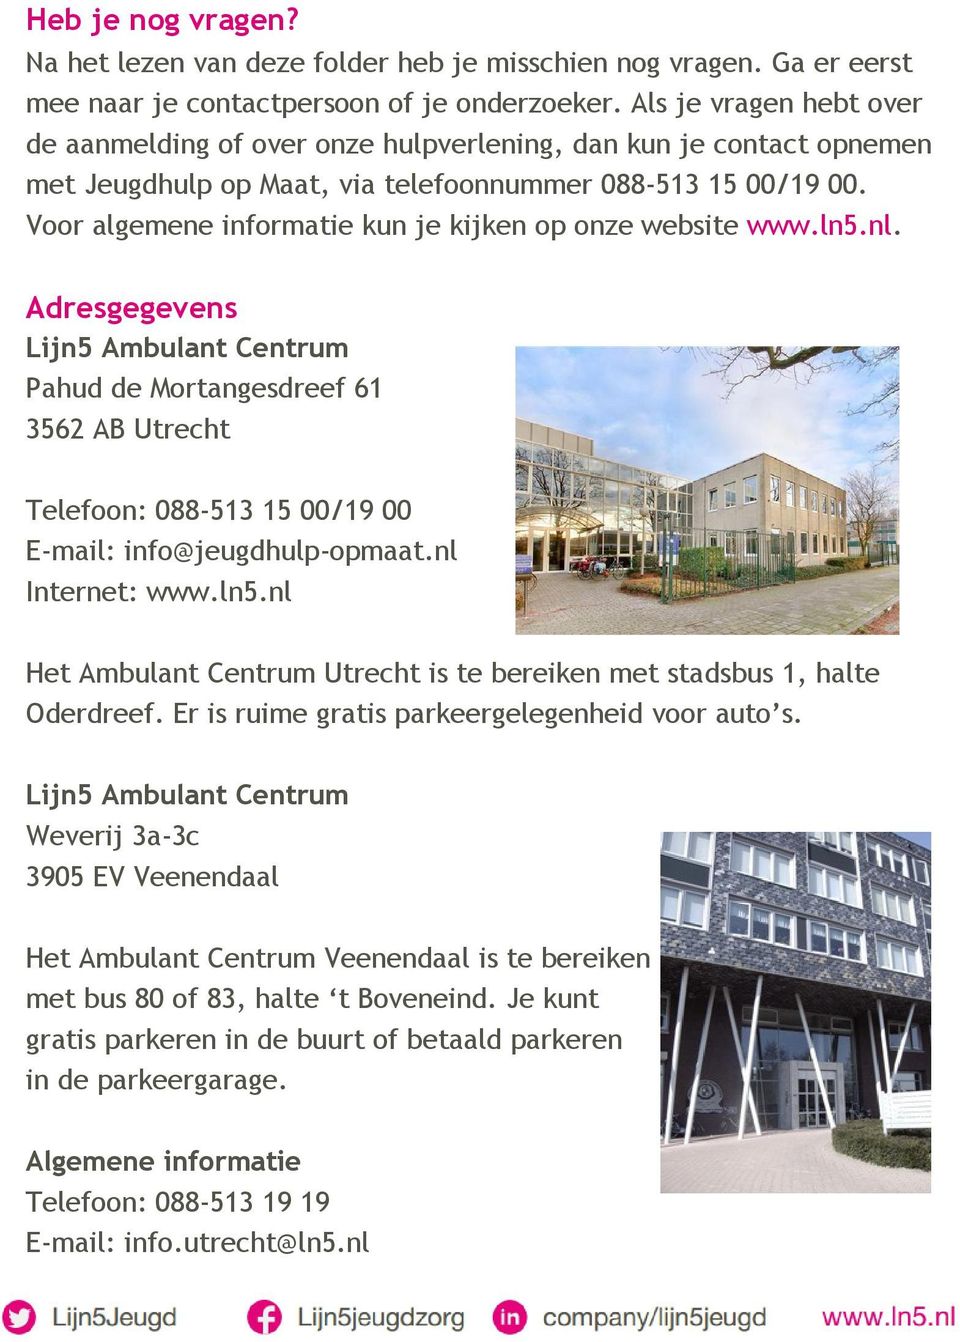 Voor algemene informatie kun je kijken op onze website www.ln5.nl.